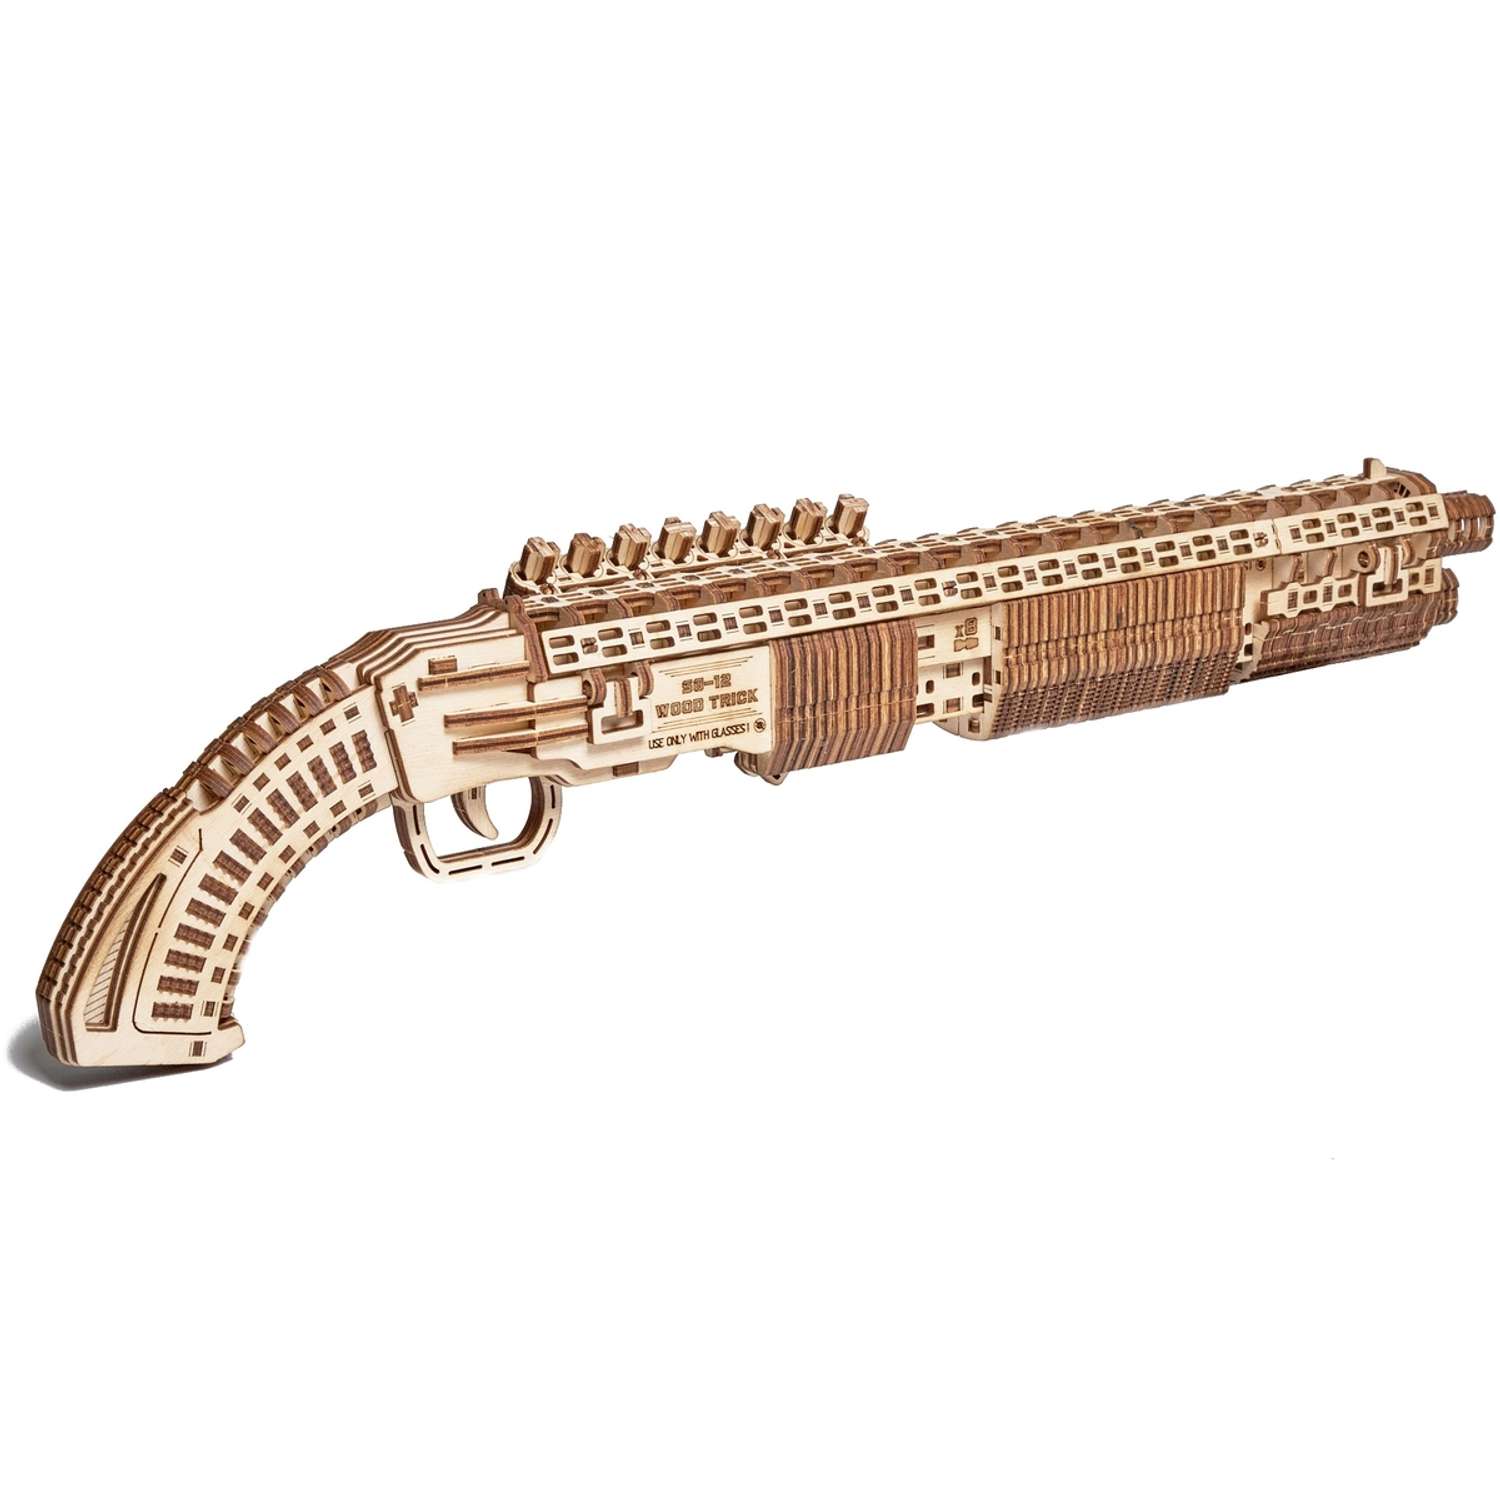 Cборная модель Wood Trick Механический Дробовик SG-12 Shotgun стреляющий деревянными пулями - фото 2